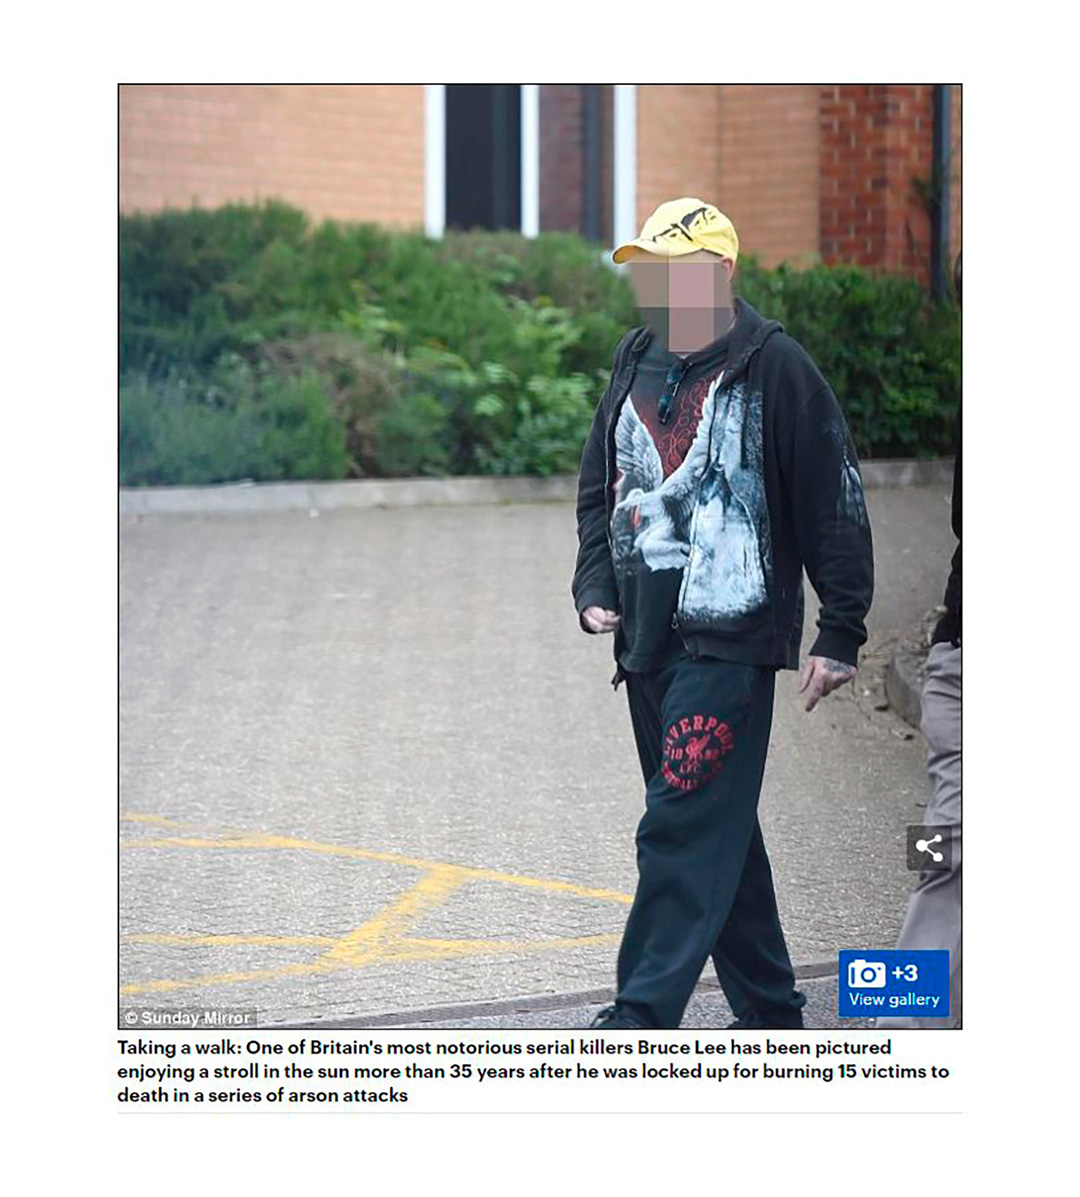 Dinsdale caminando en libertad en 2016. Así lo halló el fotógrafo del Daily Mail y provocó una gran polémica (Captura Mail Online)